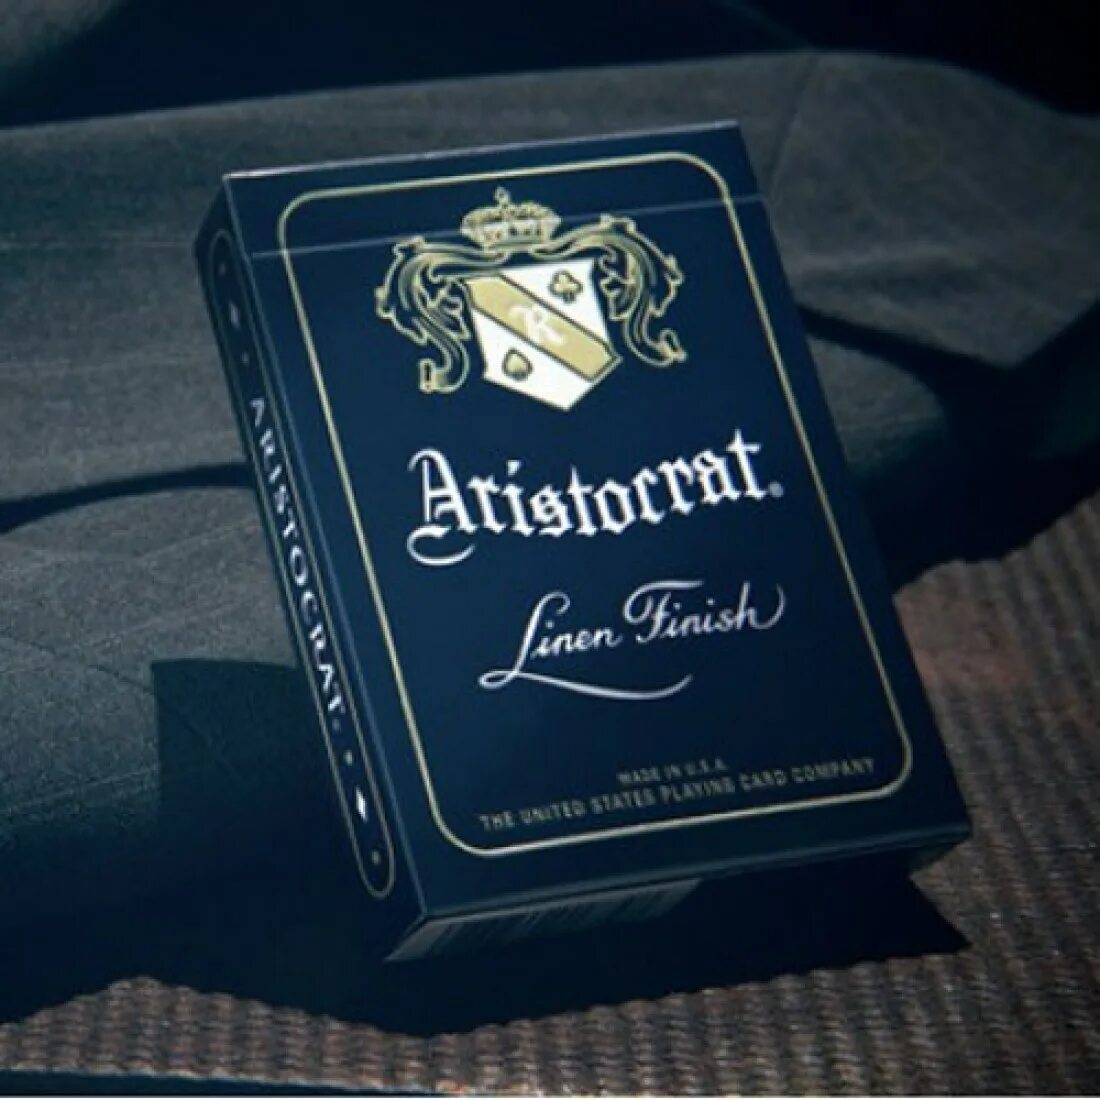 Only attempt. Bicycle Aristocrat 727. Aristocrat (Blue). Elegant Aristocrat Core. Aristokrat Linen finish Cards.